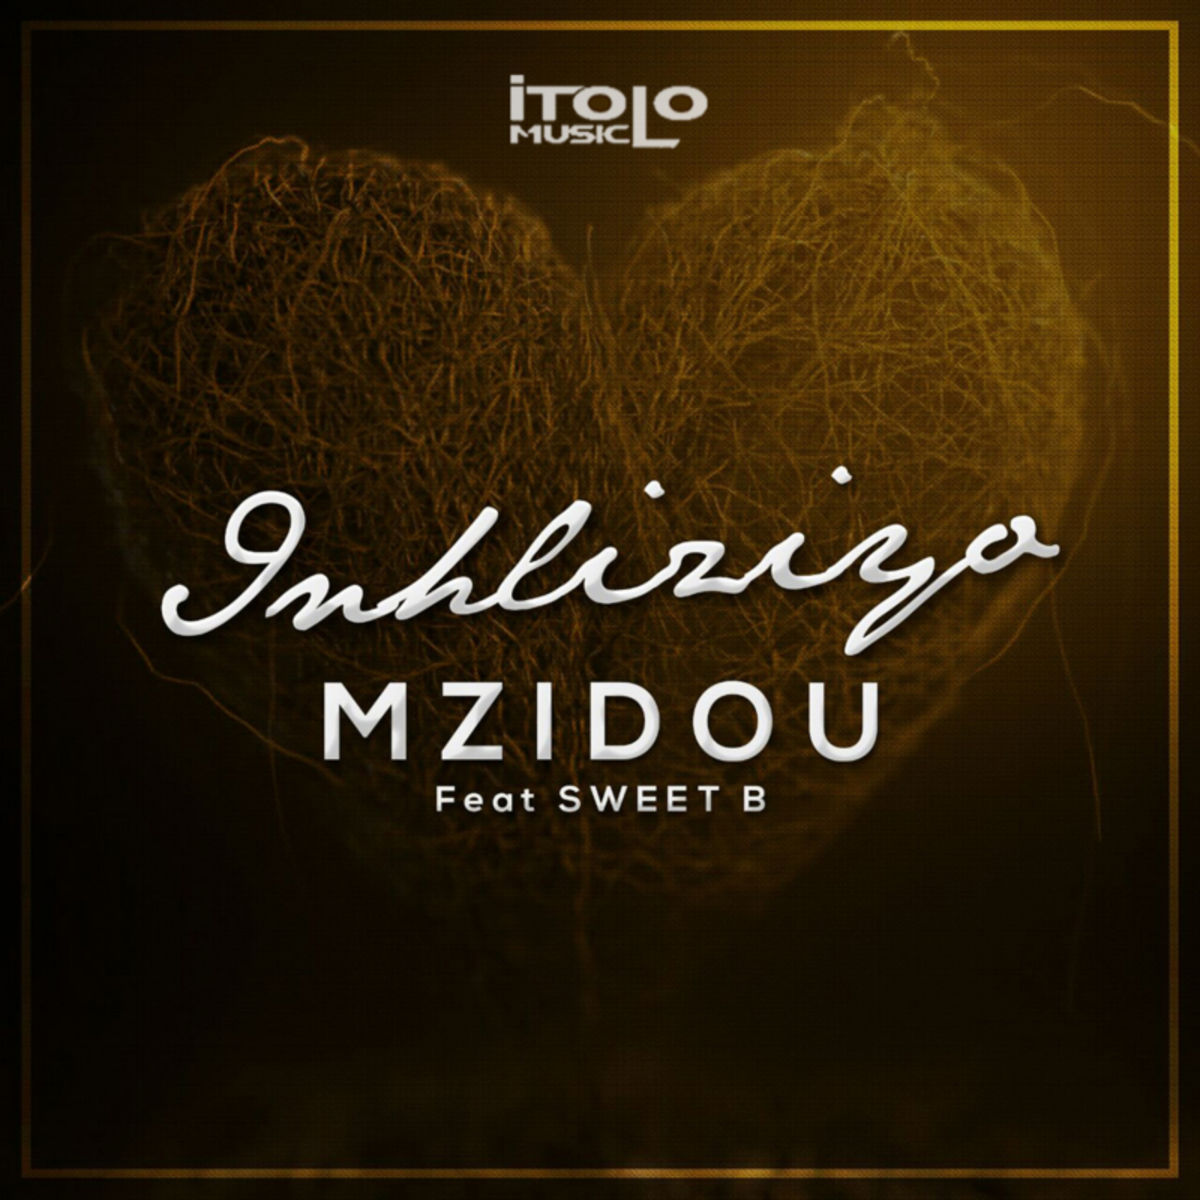 Mzidou ft Sweet B - Inhliziyo / iTolo Music